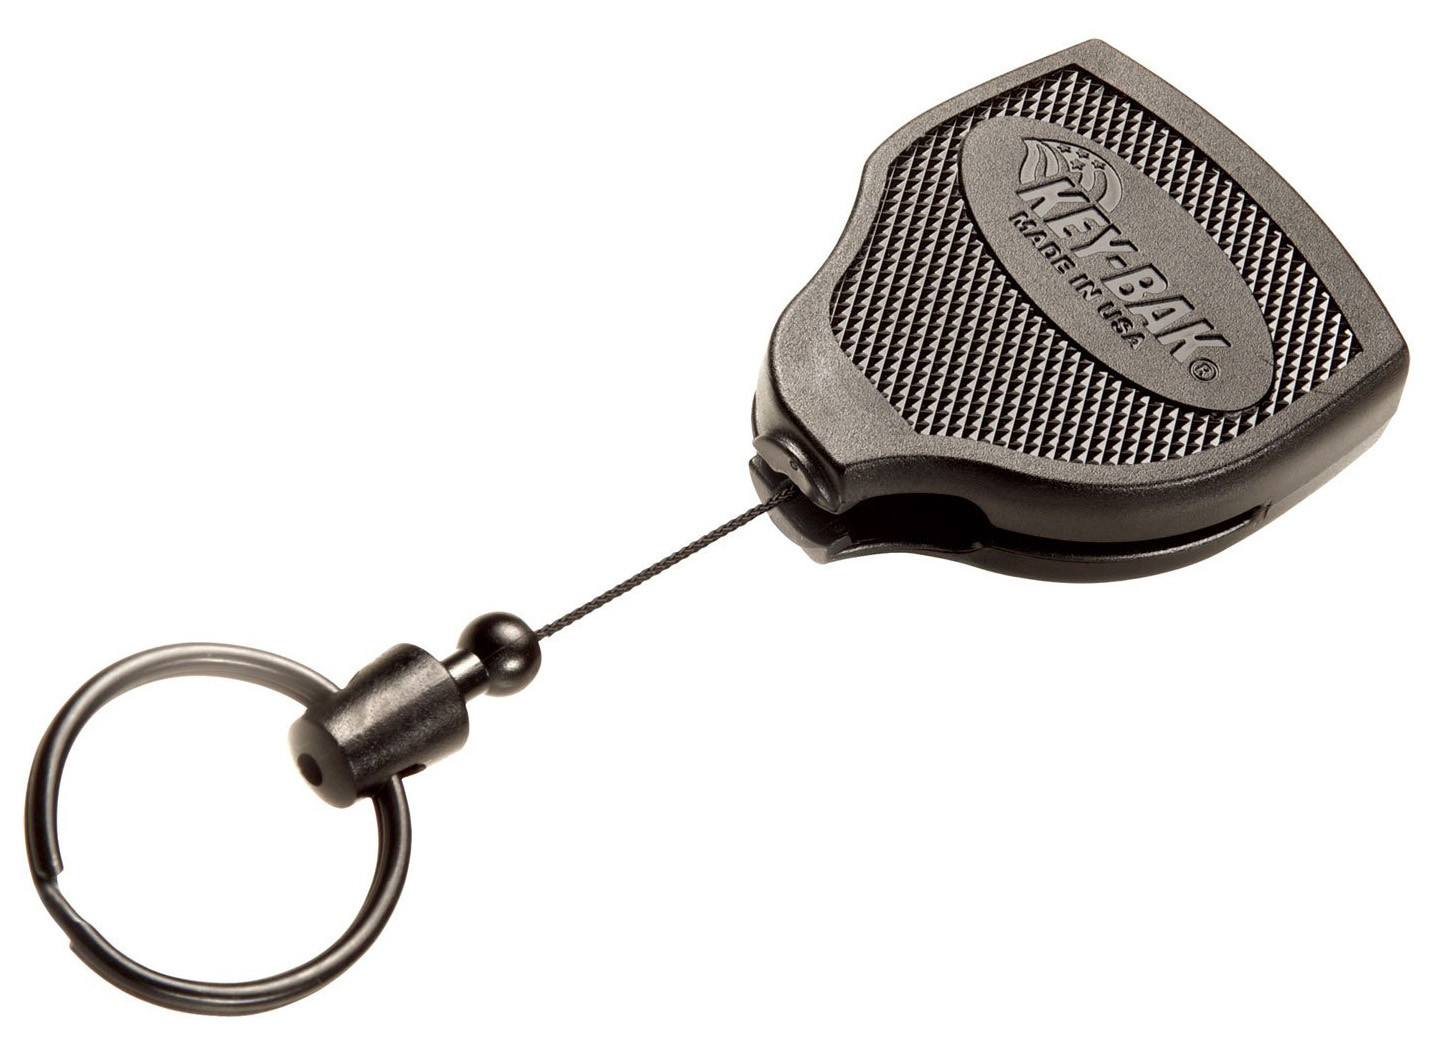 6 Pack Porte-clés extensible, porte-badge rétractable Rouleau de clé,  porte-clés Fob Lanyard extensible pour porte-cartes d'identité, porte-cartes,  cartes-clés